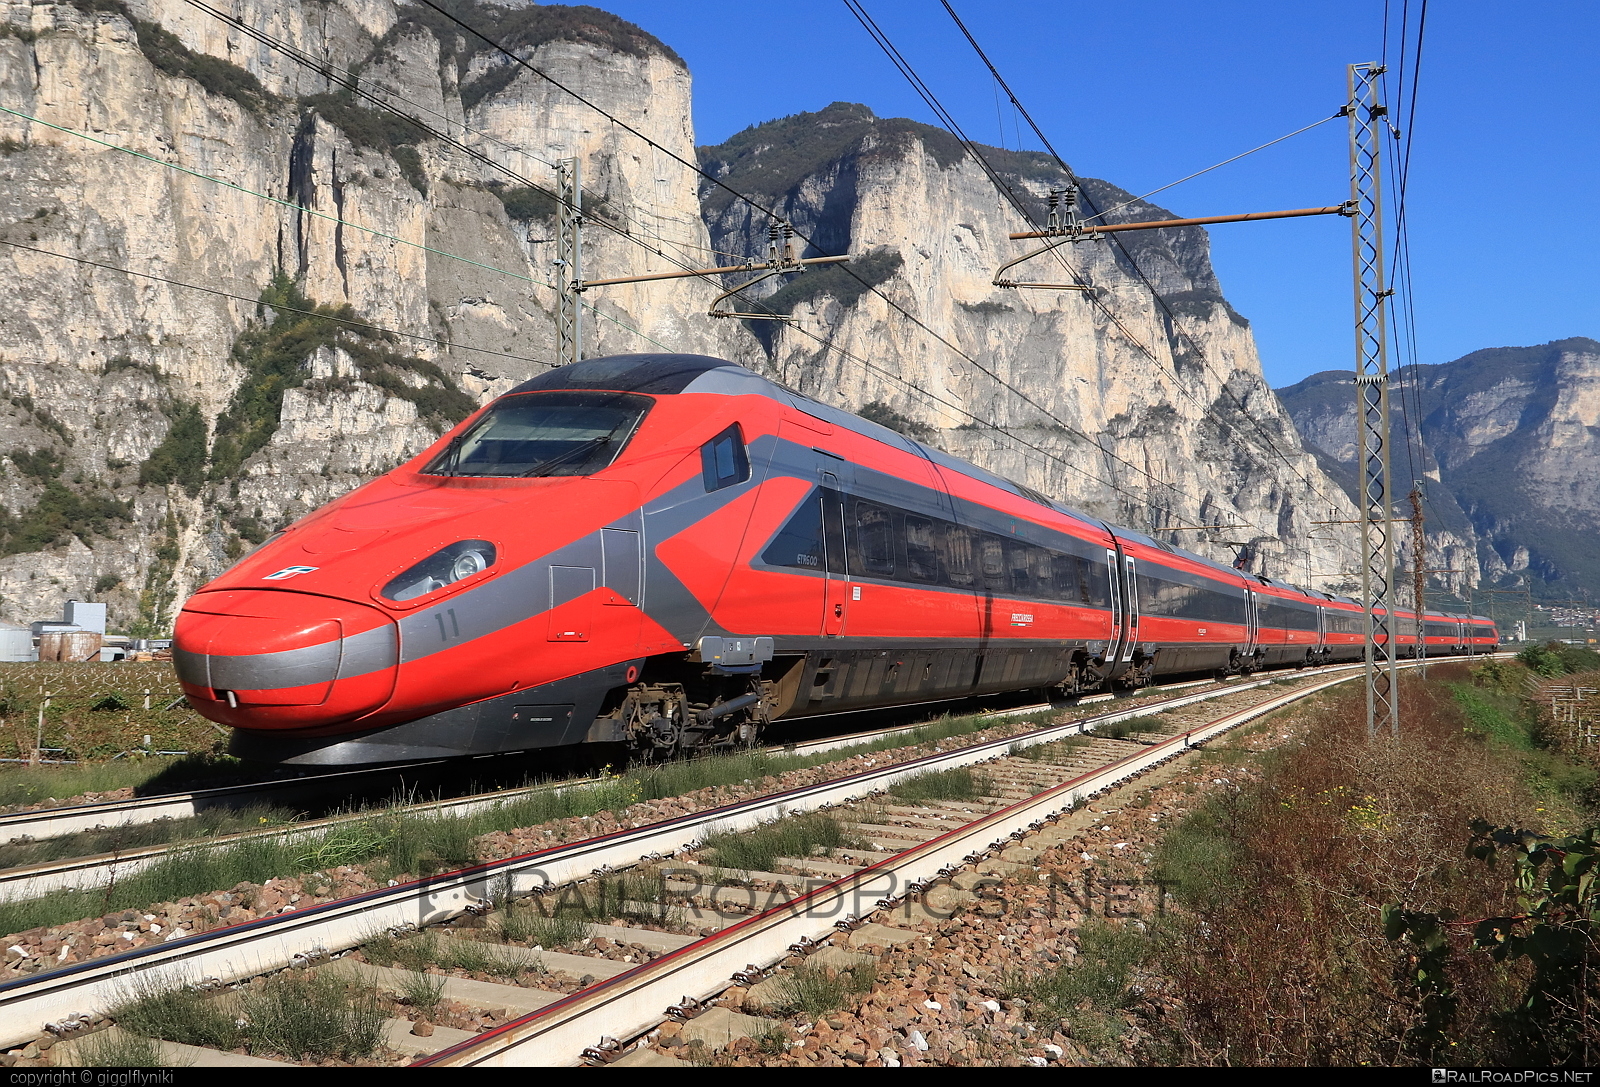 Alstom Class ETR.600 - ETR 600.11 operated by Trenitalia S.p.A. #alstom #alstometr600 #etr600 #ferroviedellostato #frecciarossa #fs #fsitaliane #lefrecce #newpendolino #pendolino #trenitalia #trenitaliaspa